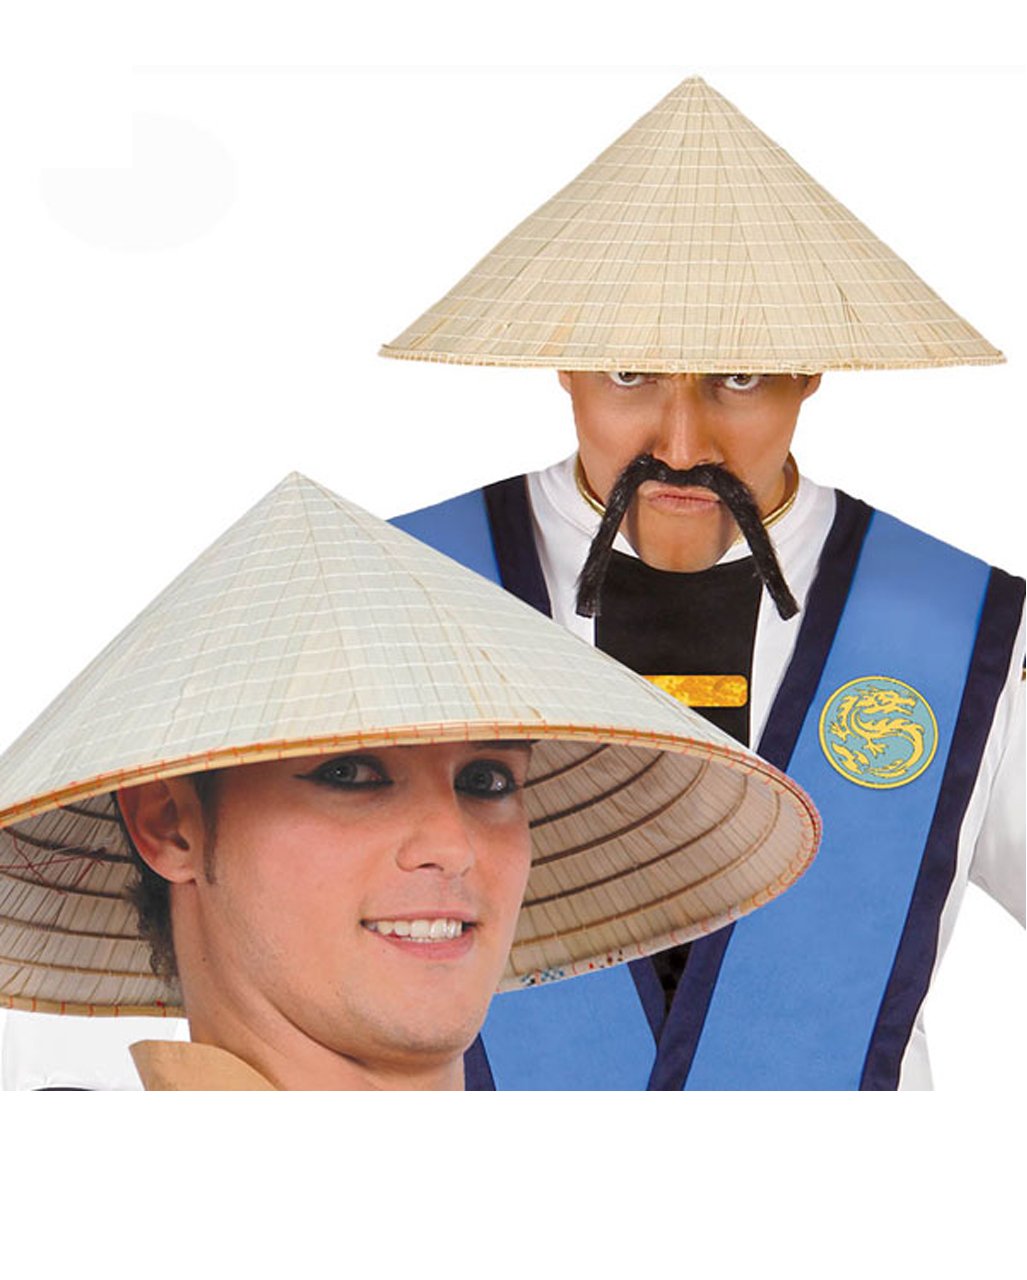 Bamboo hat. Японская соломенная шляпа амигаса. Шляпа амигаса Вьетнам. Бамбуковая шляпа доули. Китайская соломенная шляпа.